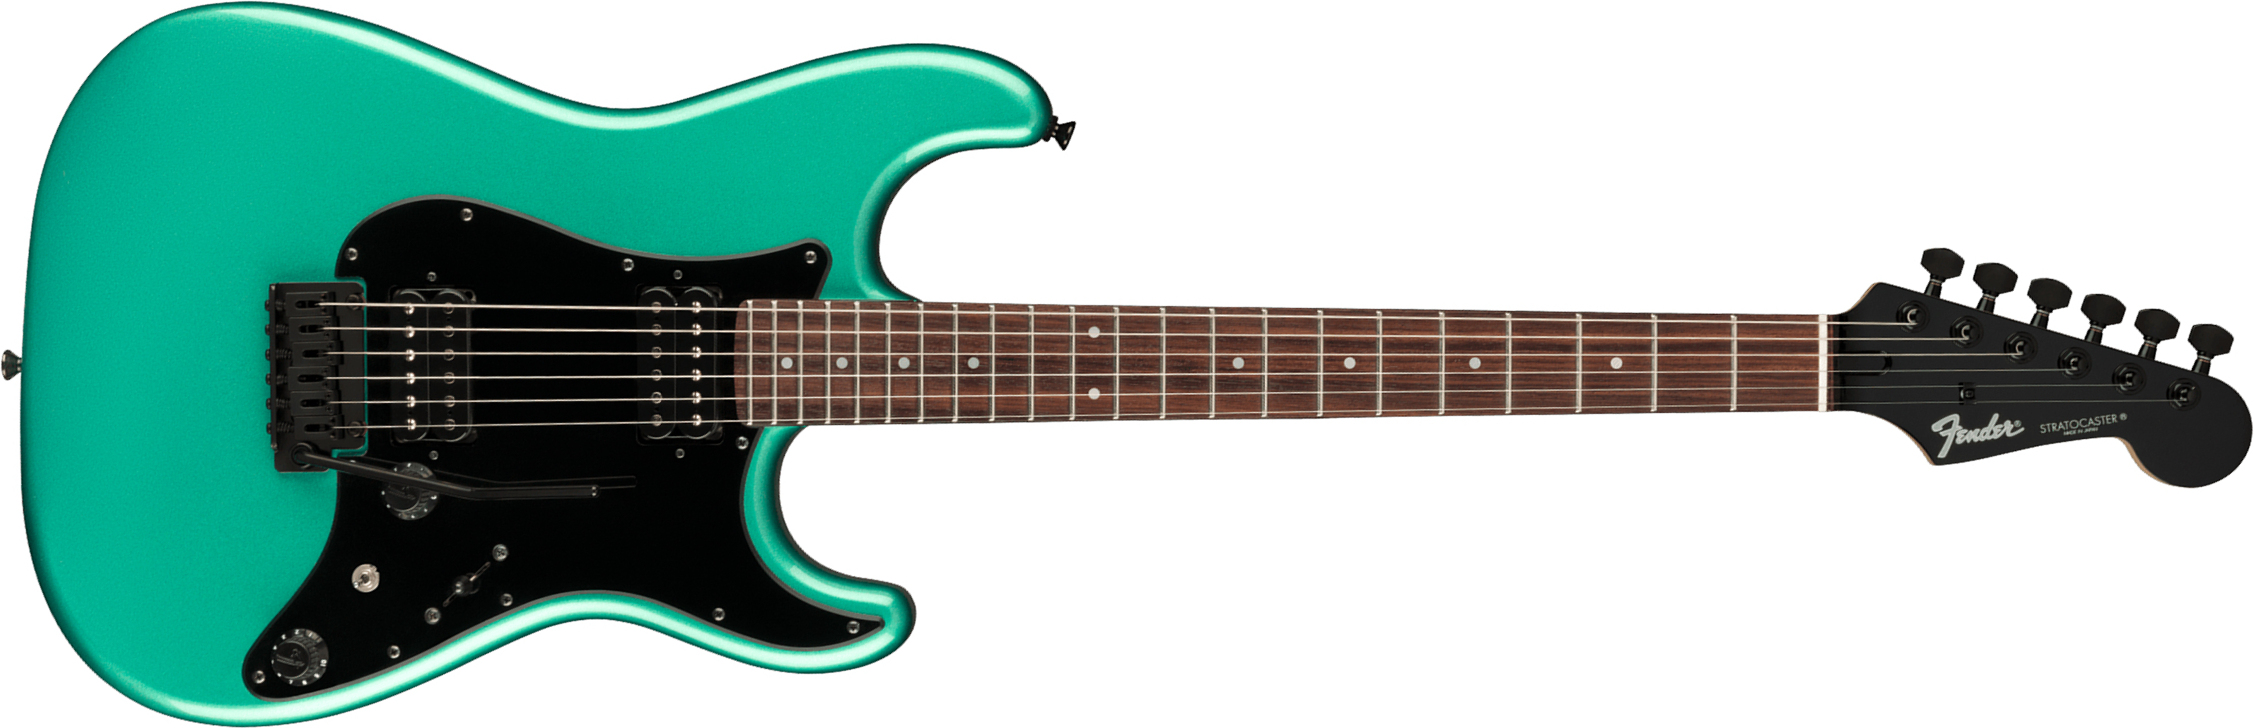 Fender Strat Boxer Hh Jap Trem Rw +housse - Sherwood Green Metallic - Guitare Électrique Forme Str - Main picture